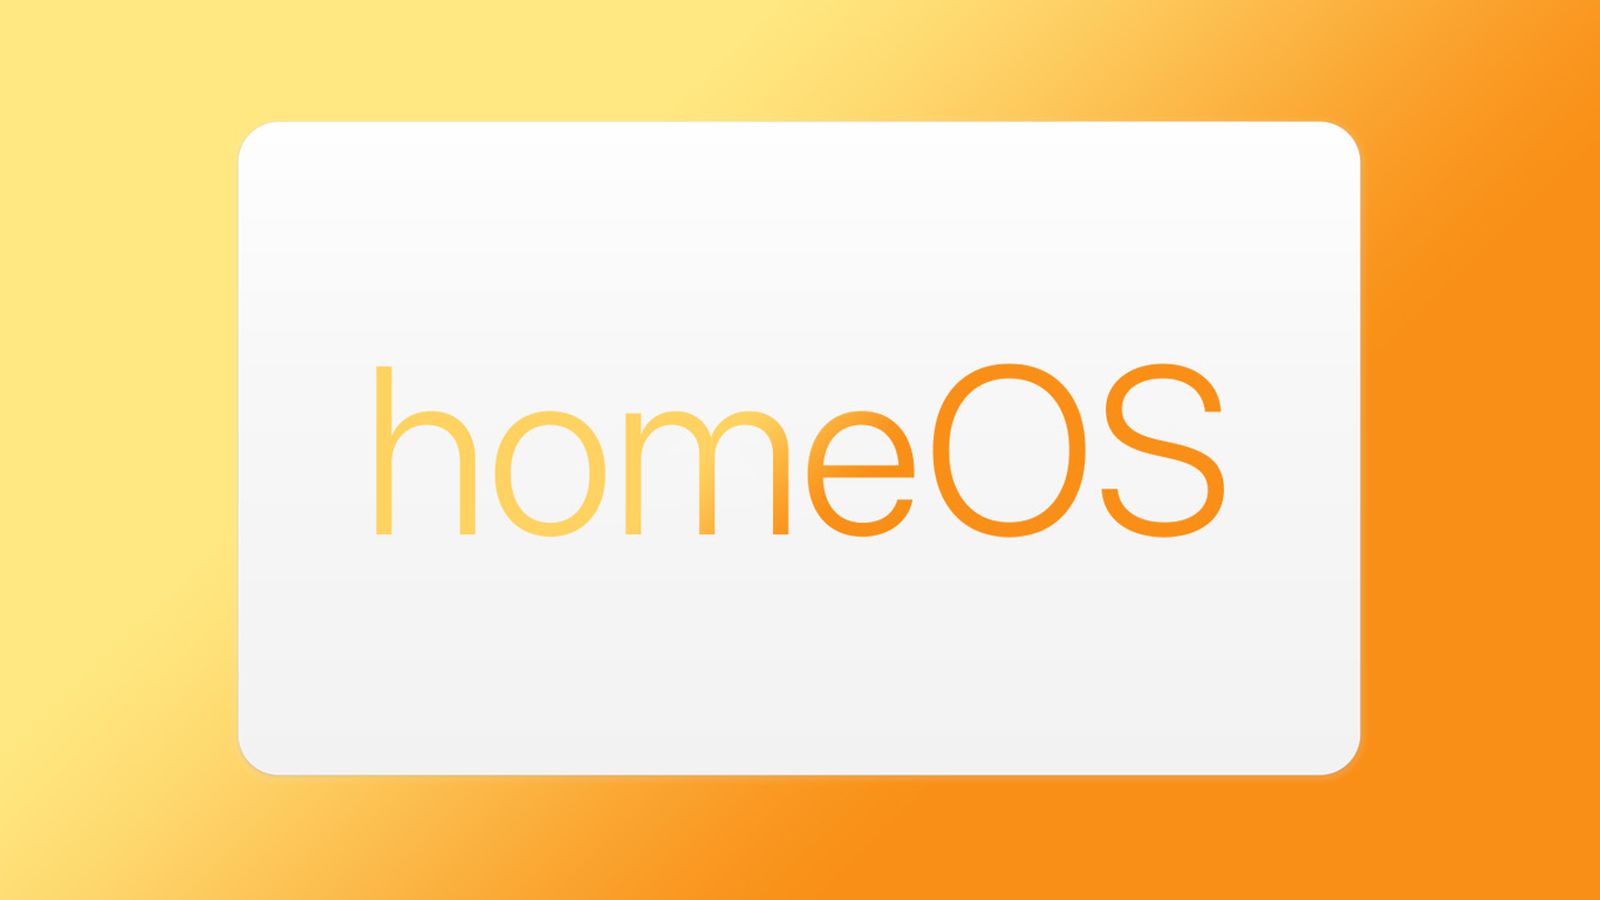 Le "homeOS" d'Apple arrive-t-il ? Les offres d'emploi de la société mentionnent un système d'exploitation pour la maison intelligente